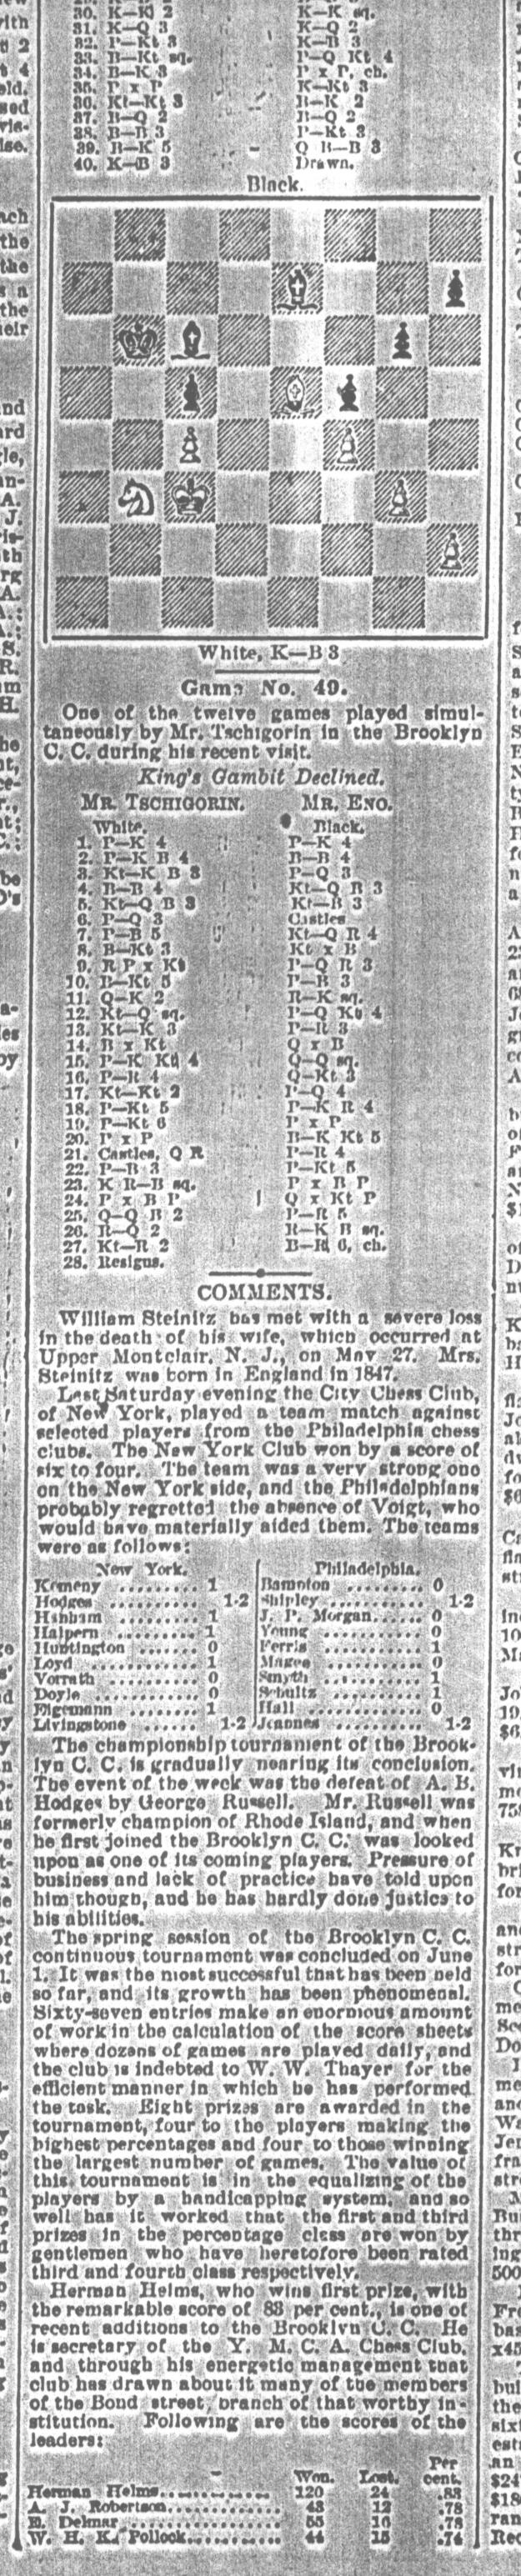 1892.06.04-02 Brooklyn Daily Standard-Union.jpg